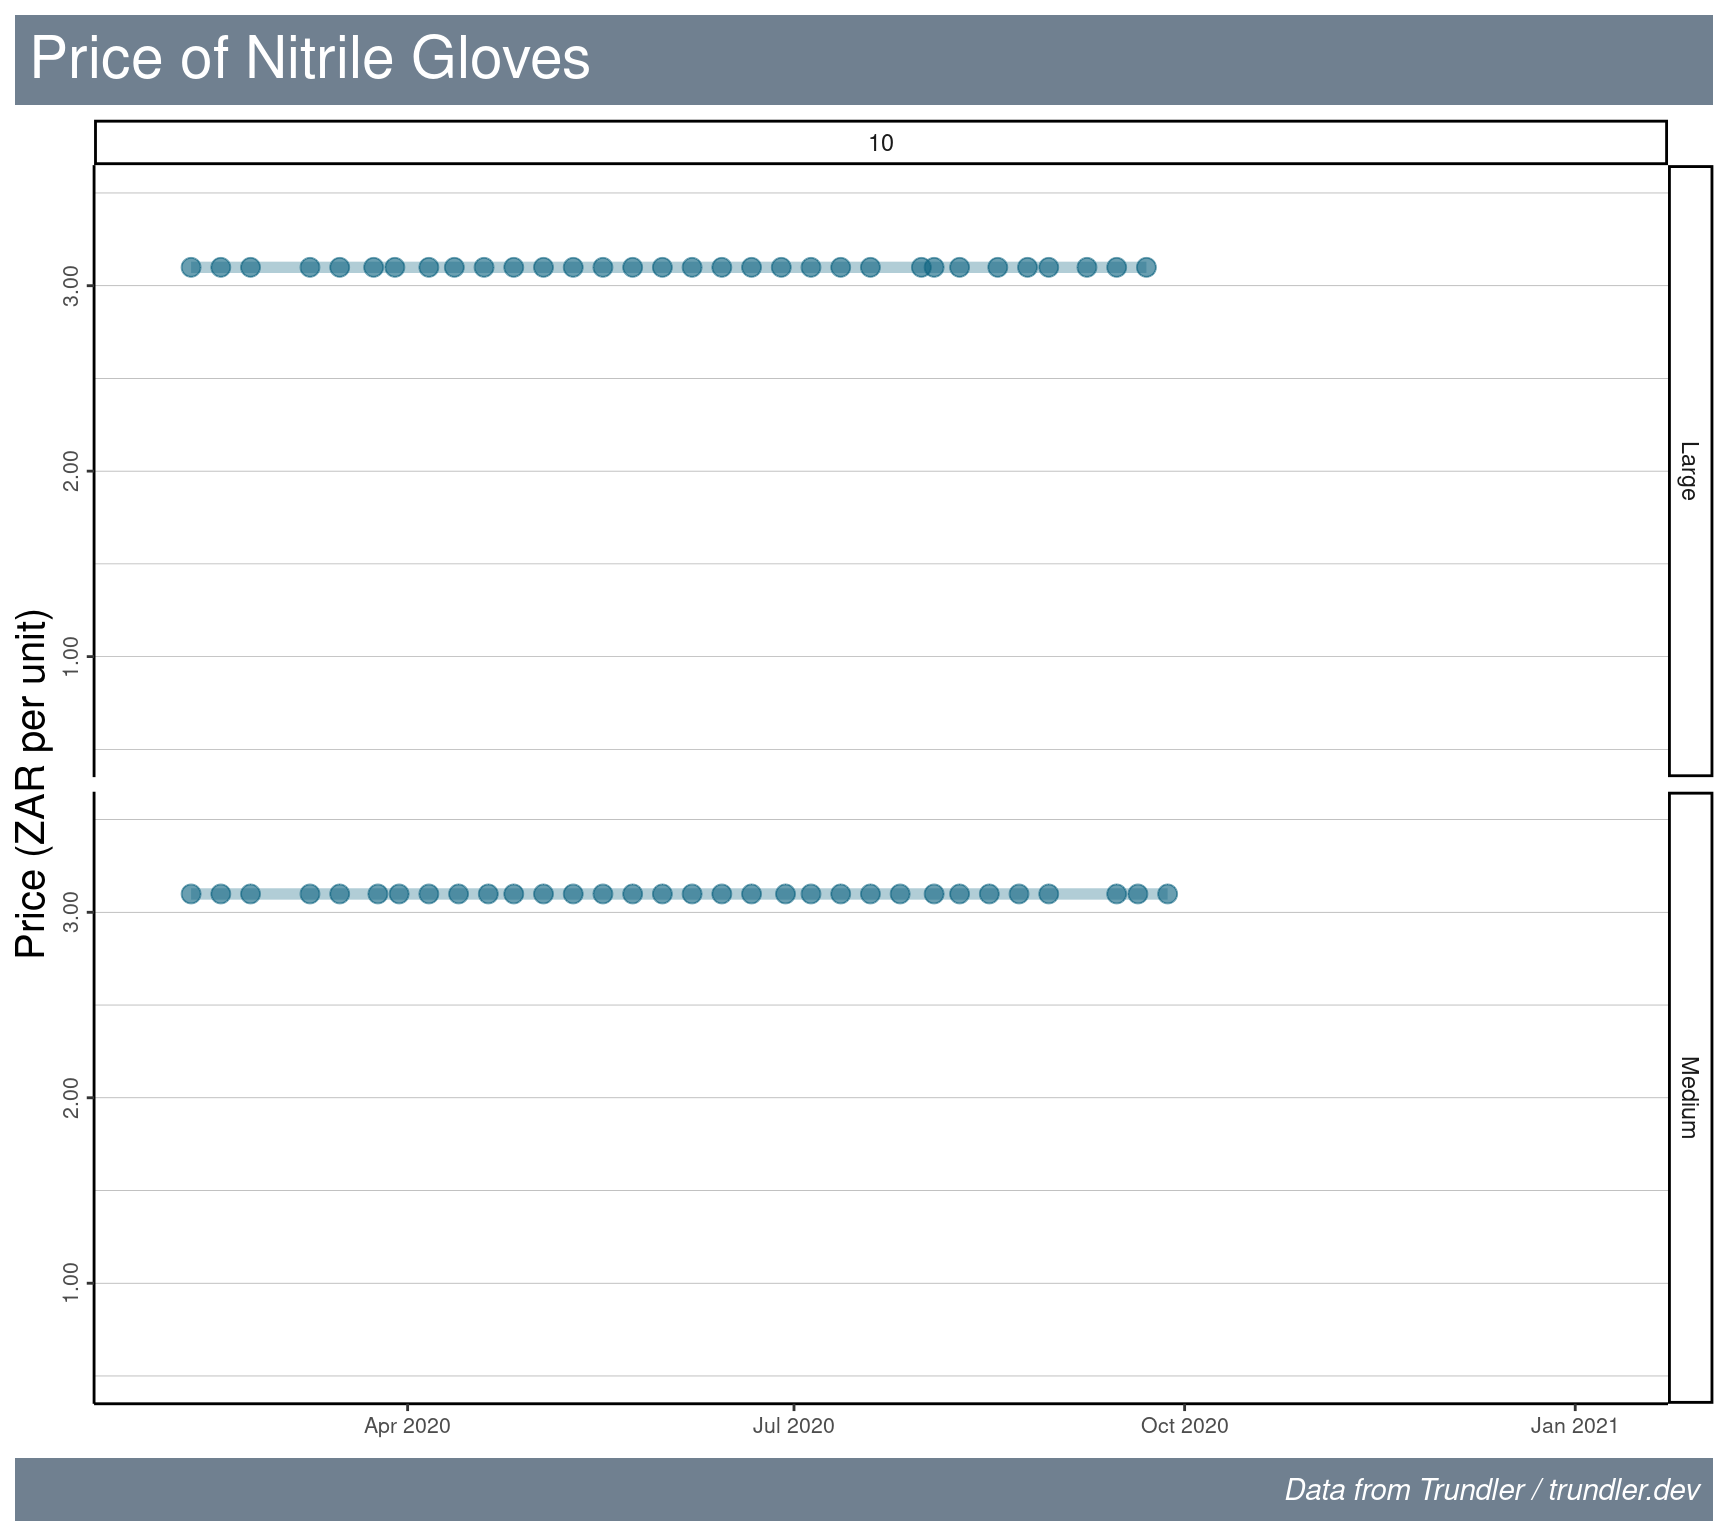 Price of nitrile gloves versus time.